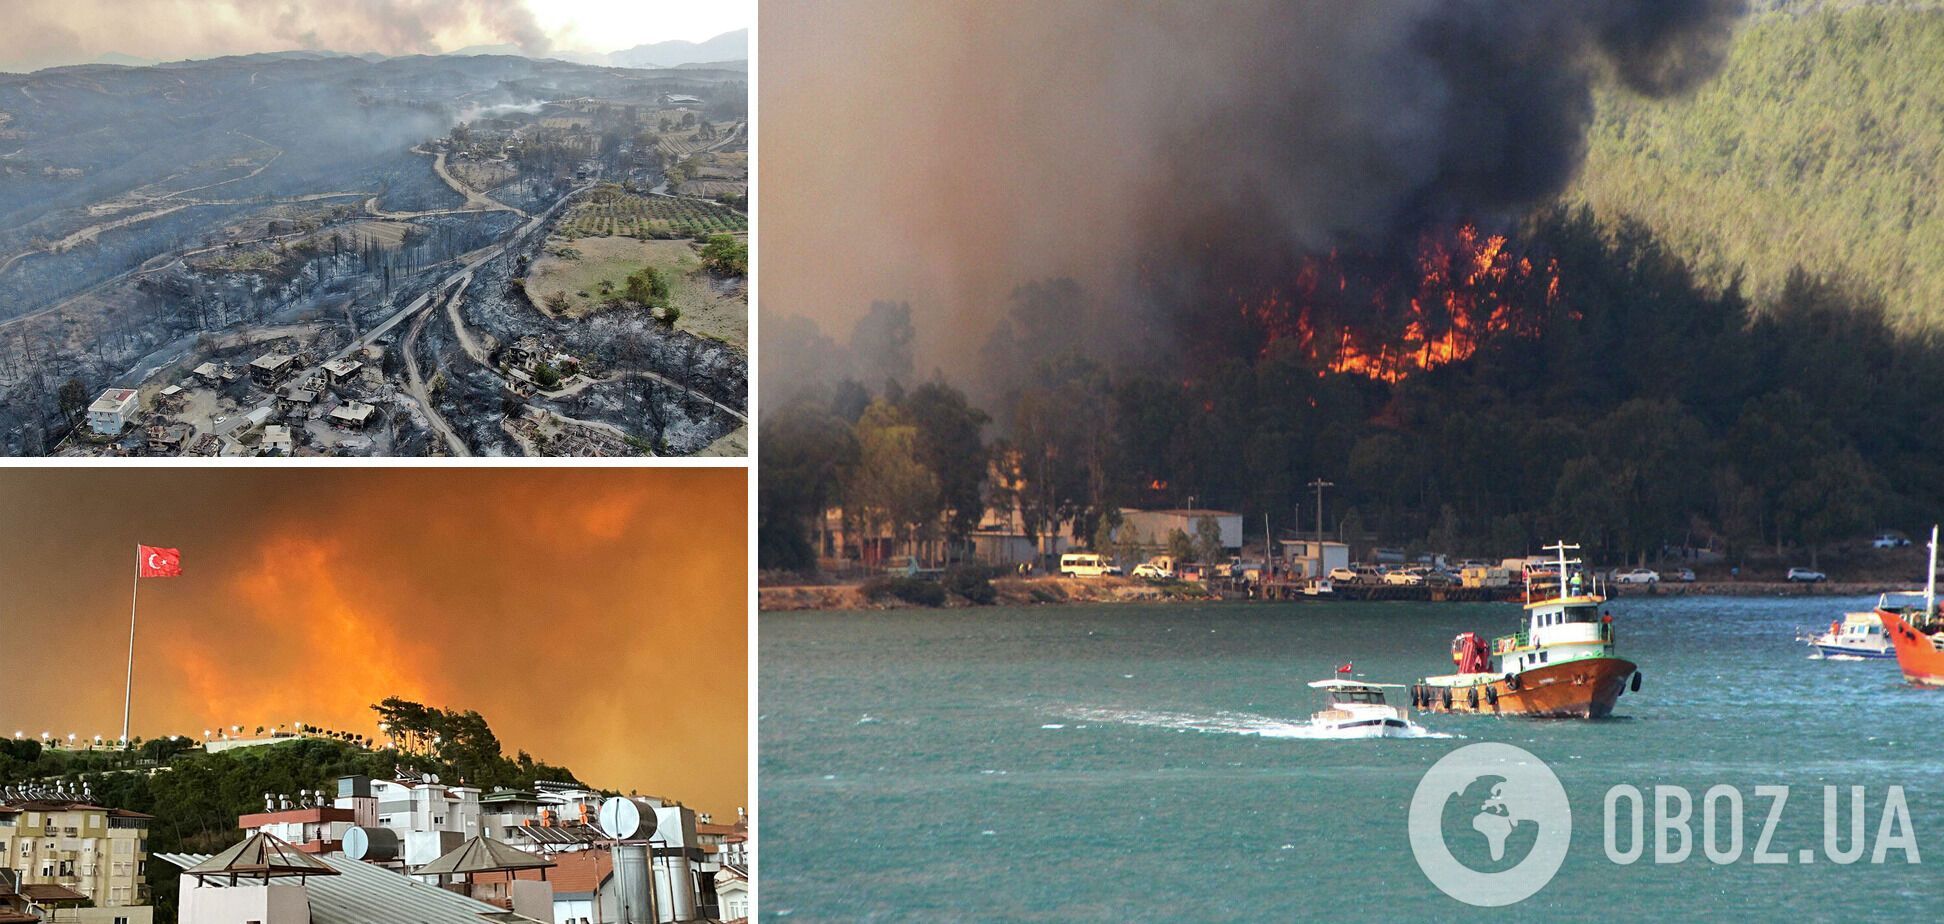 Масштабные лесные пожары в Турции: ищите 'руссо туристо'?